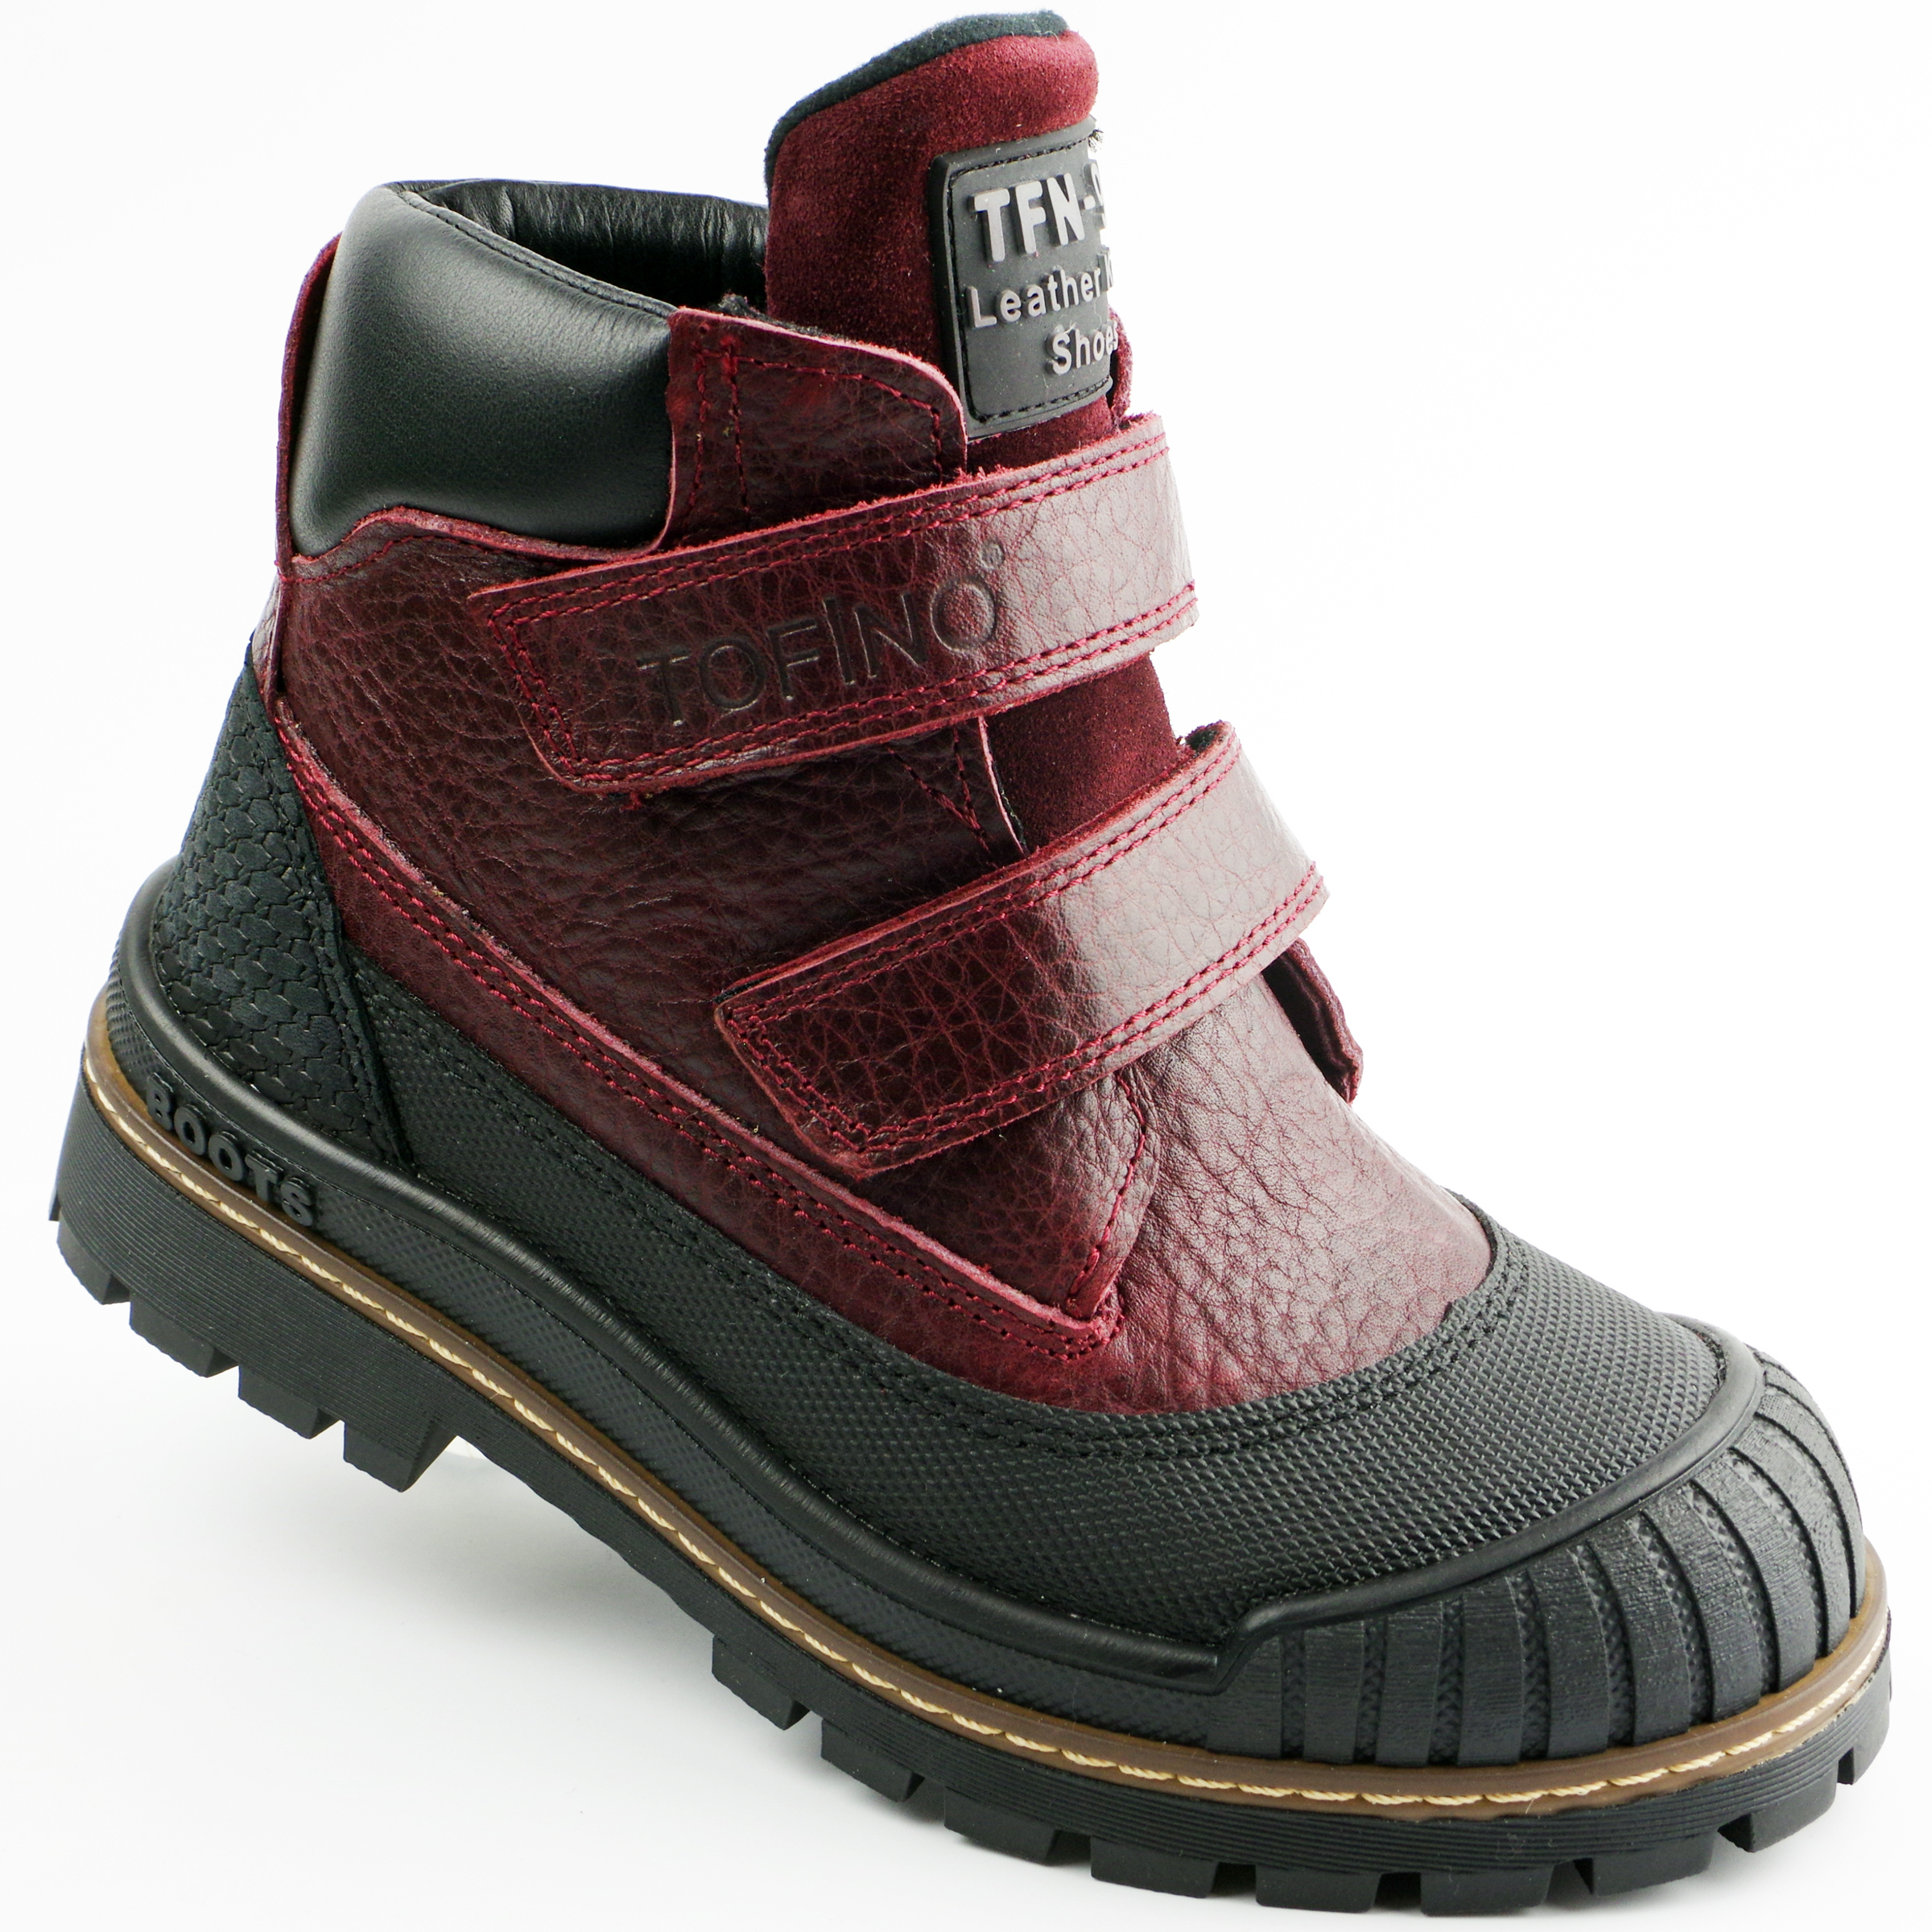 Демисезонные ботинки (2149) материал Нубук, цвет Бордовый  для девочки 31-36 размеры – Sole Kids. Фото 1